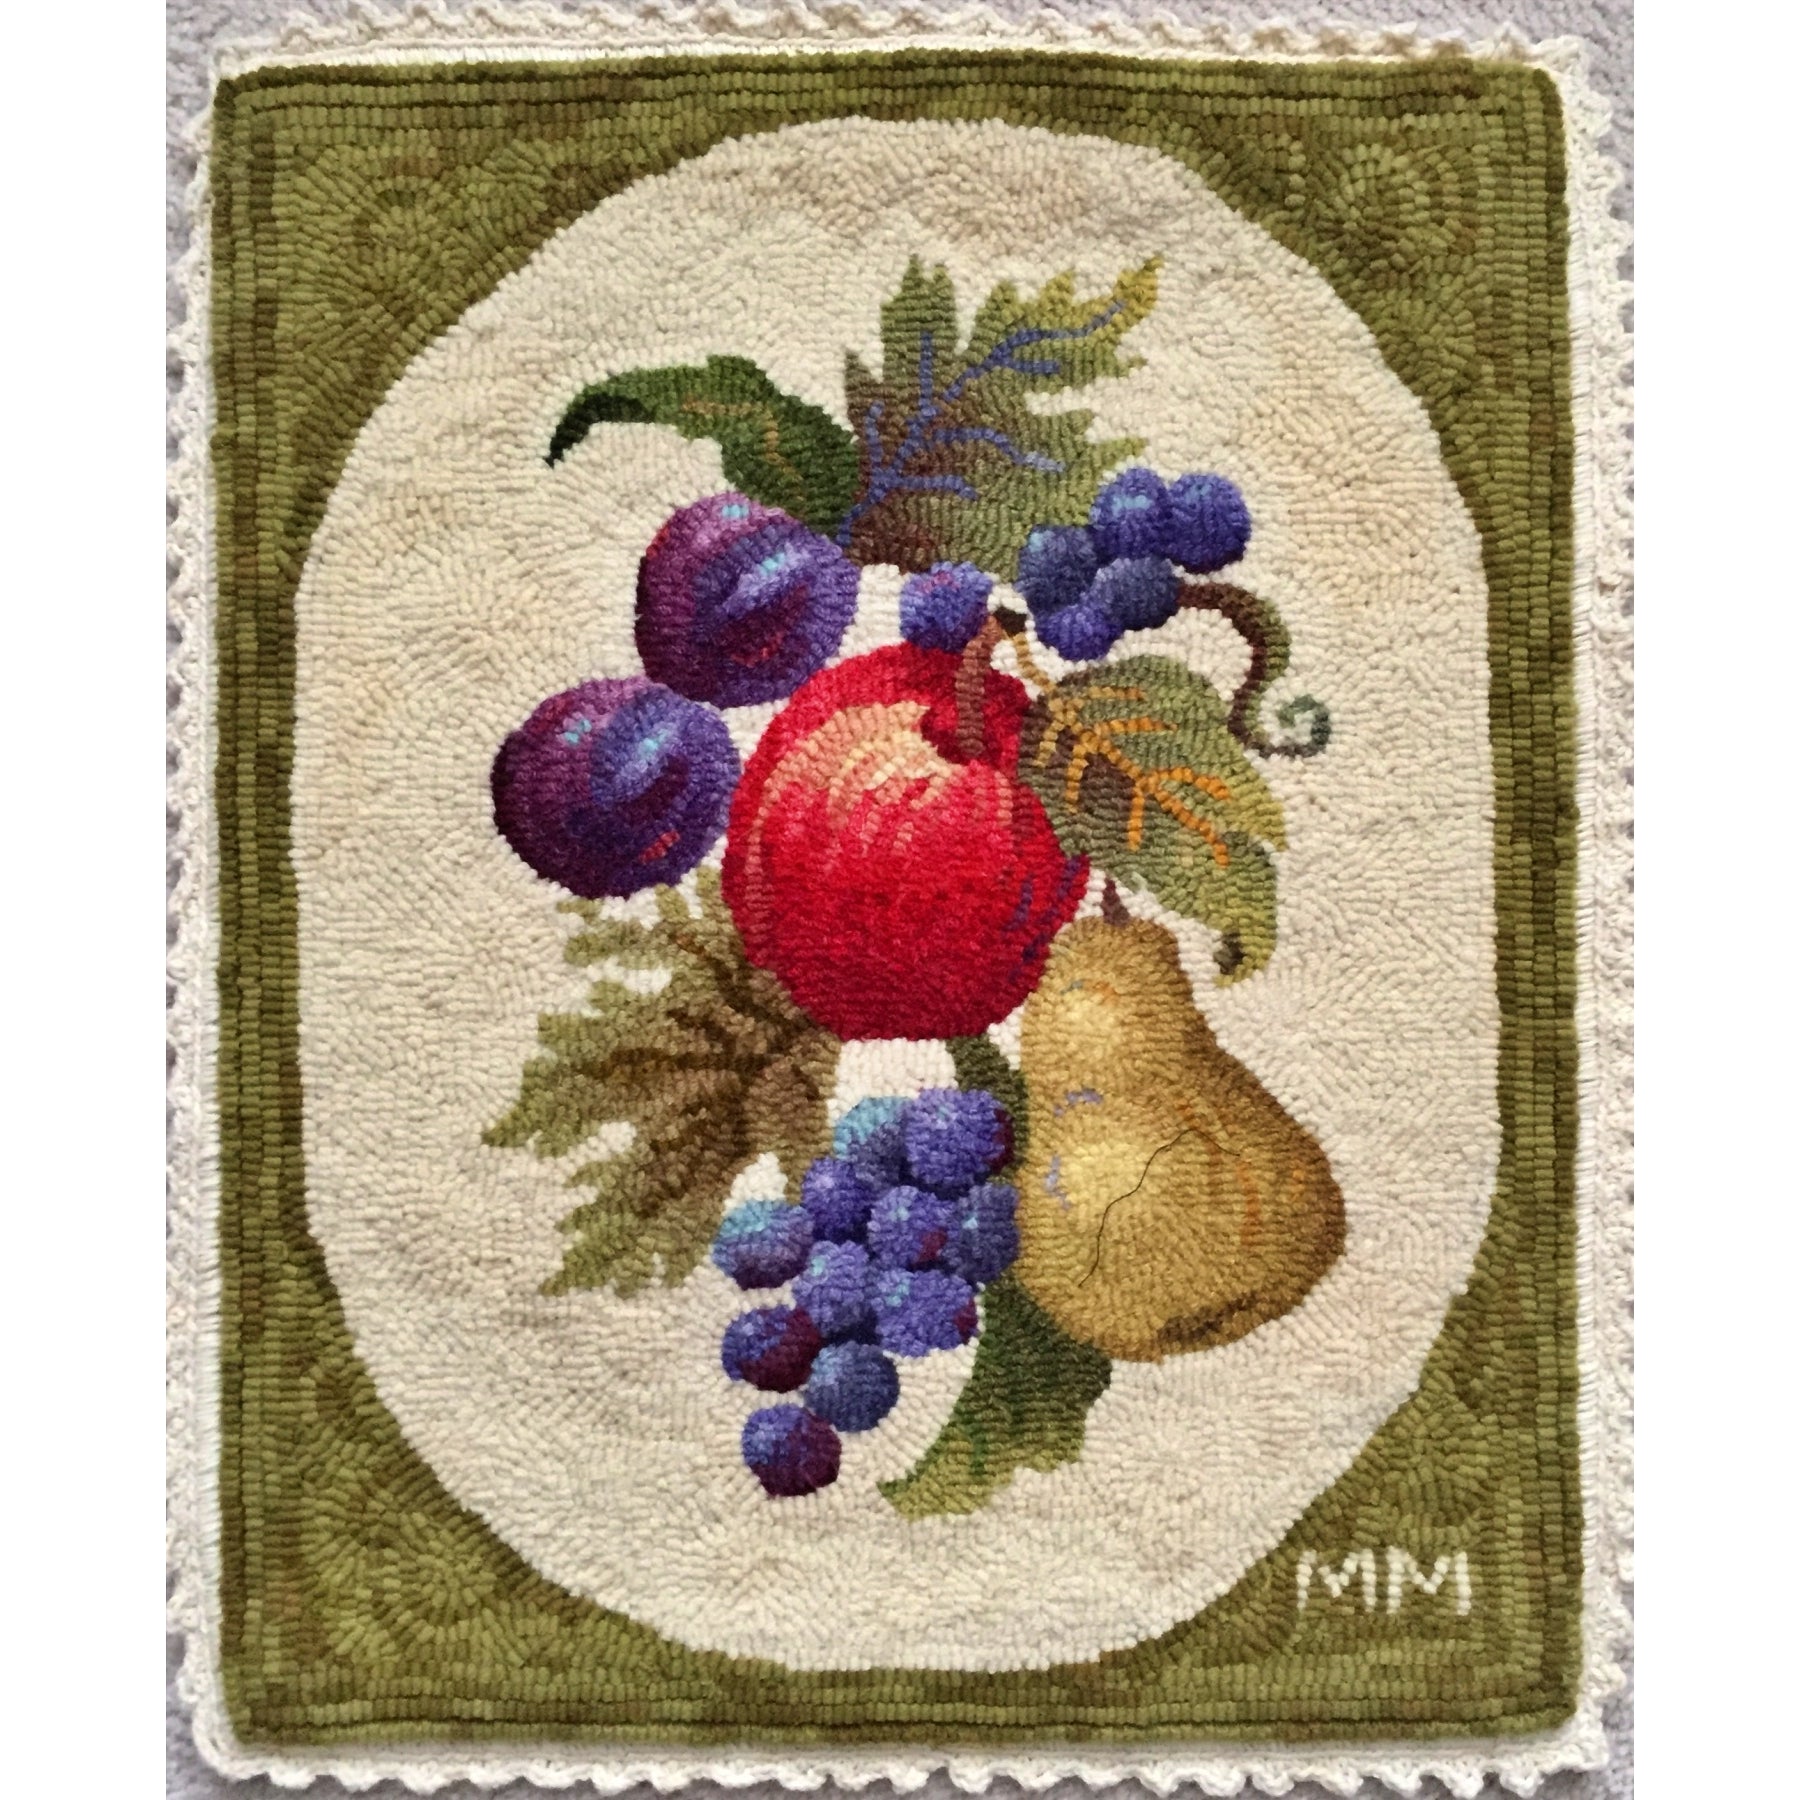 Fruit, rug hooked by Marg Miller